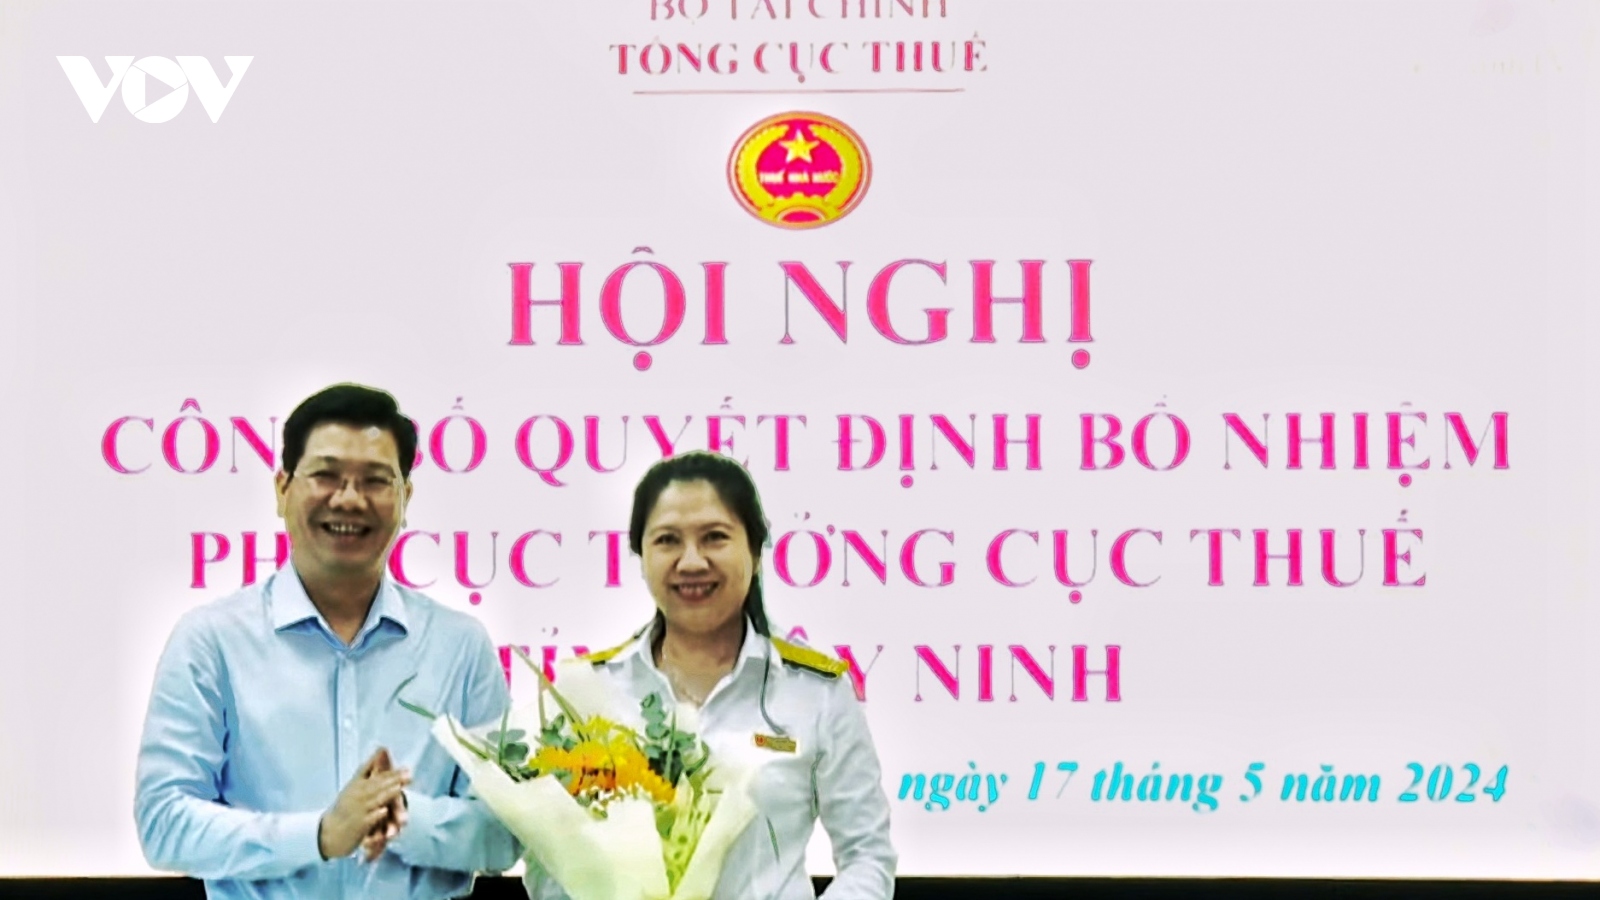 Bà Nguyễn Thị Sang làm Phó Cục trưởng Cục thuế Tây Ninh